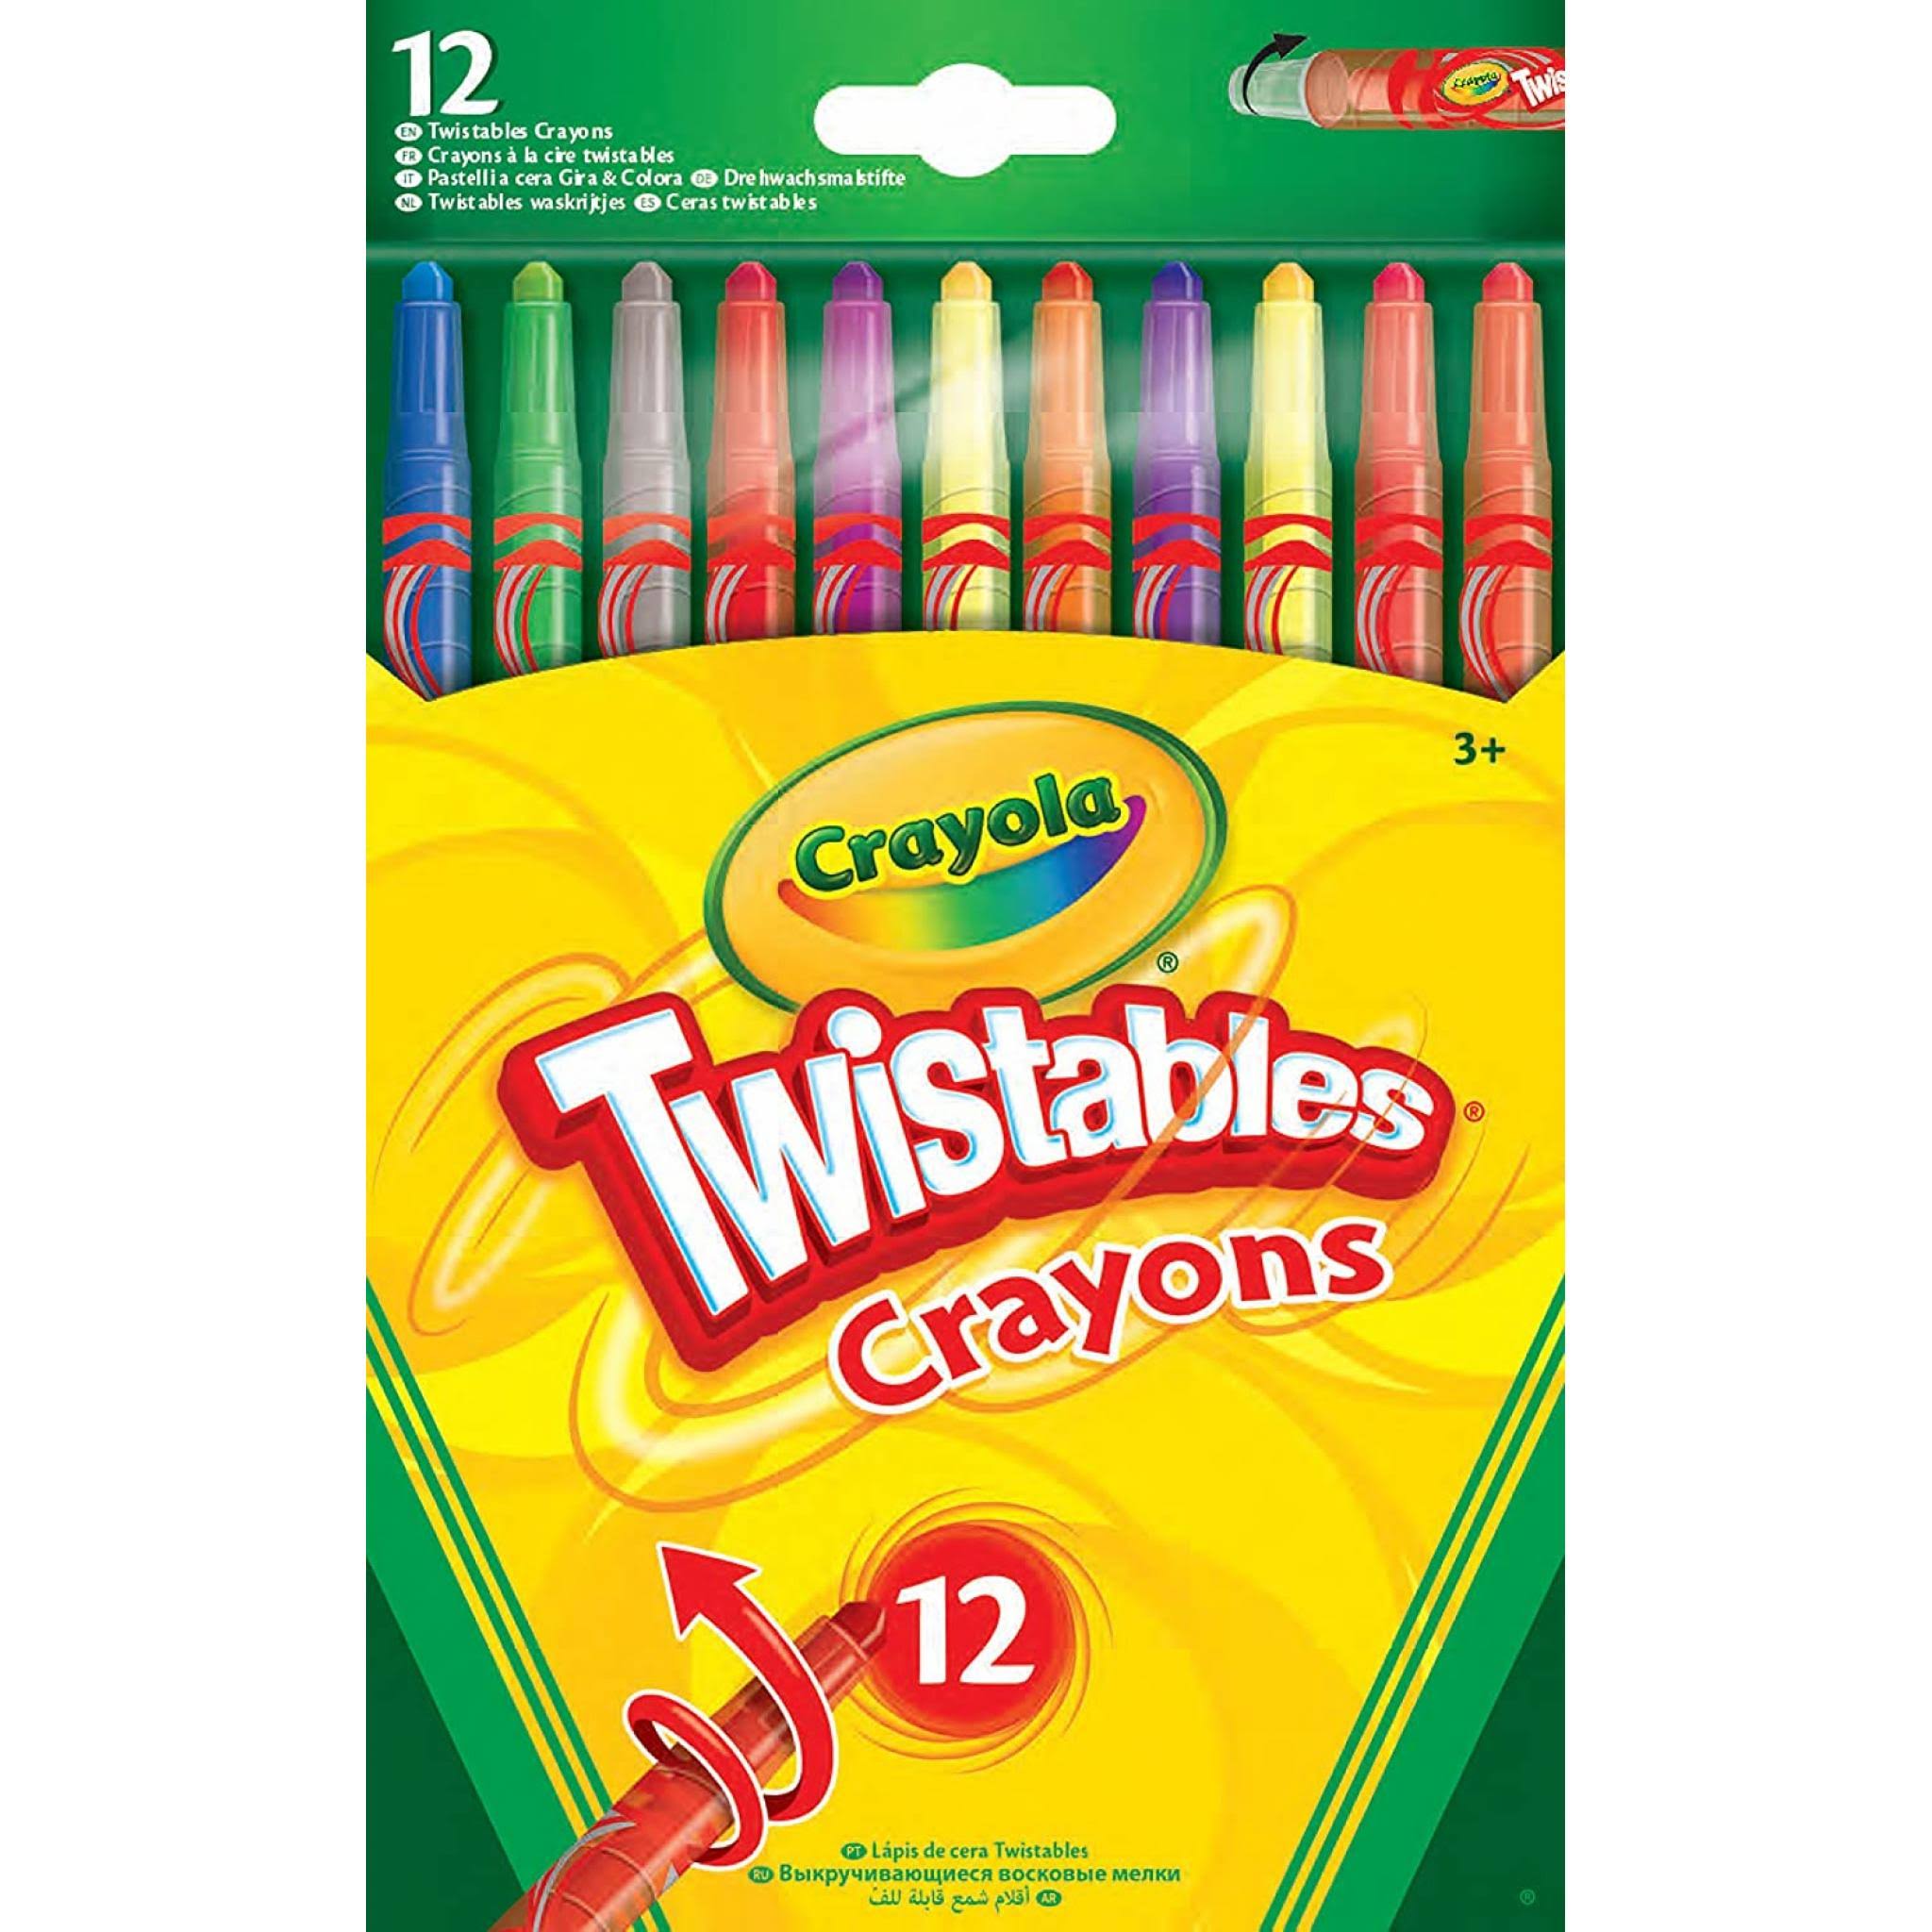 Crayola Twistable Crayons - 12pk